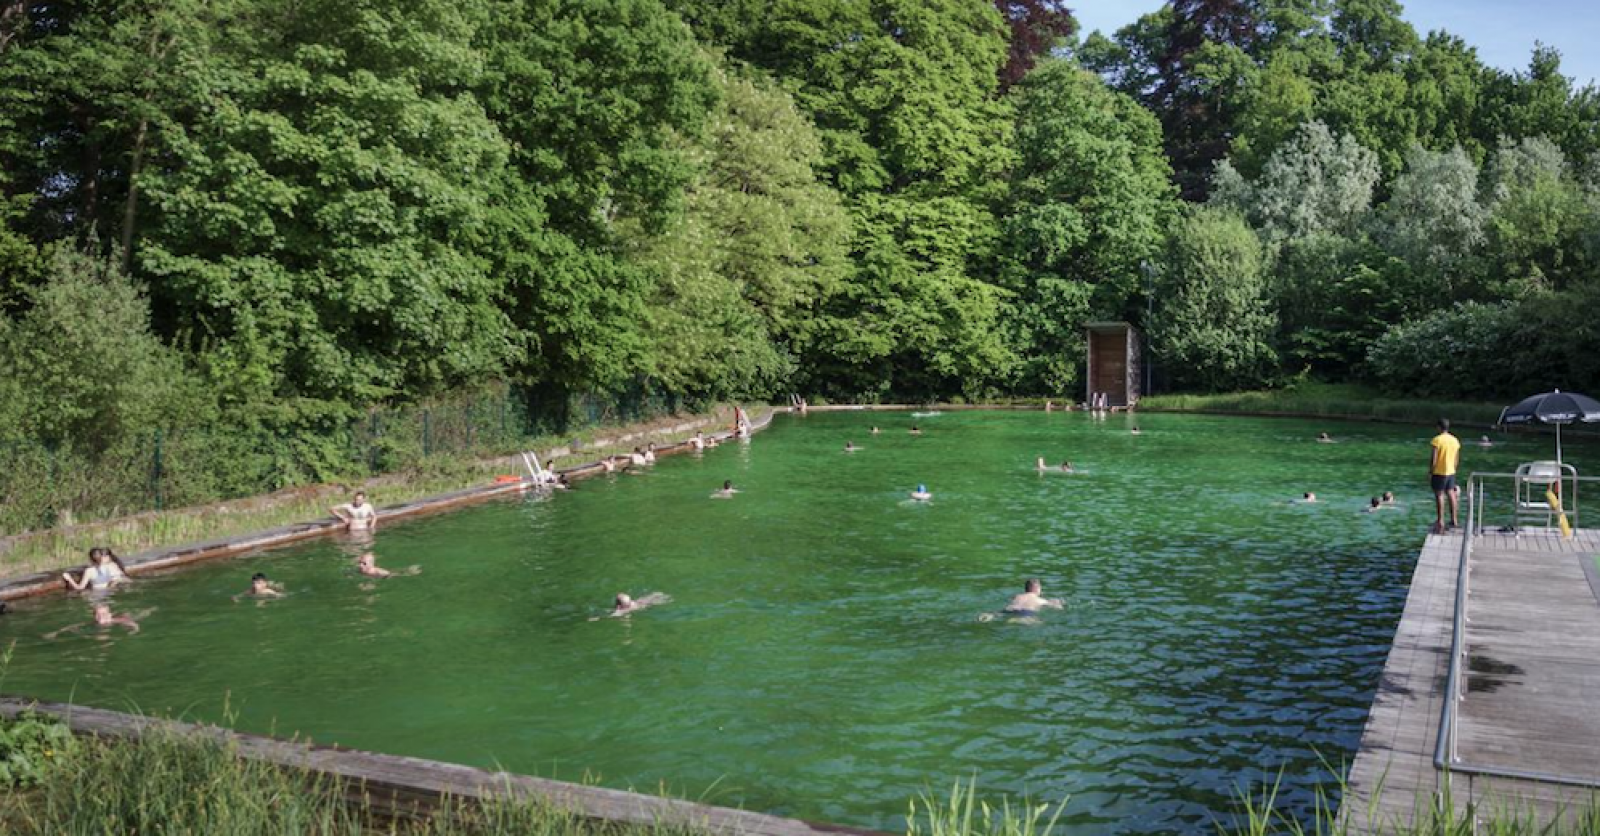 Découvre où te baigner en plein air en Belgique cet été - Metrotime